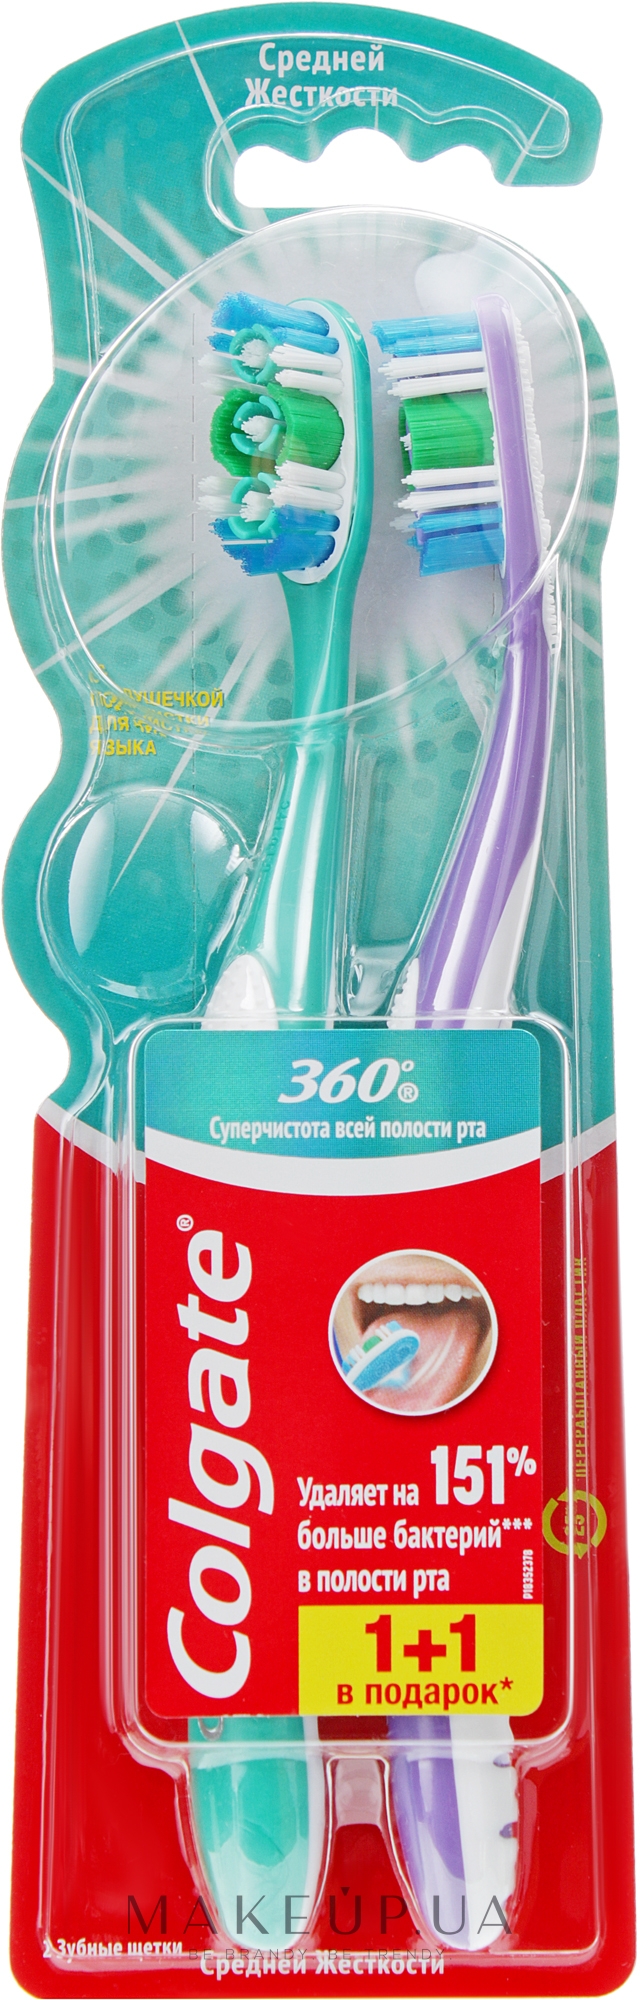 Зубная щетка 360 "Суперчистота" средняя, 1 + 1, зеленая + фиолетовая - Colgate — фото 2шт